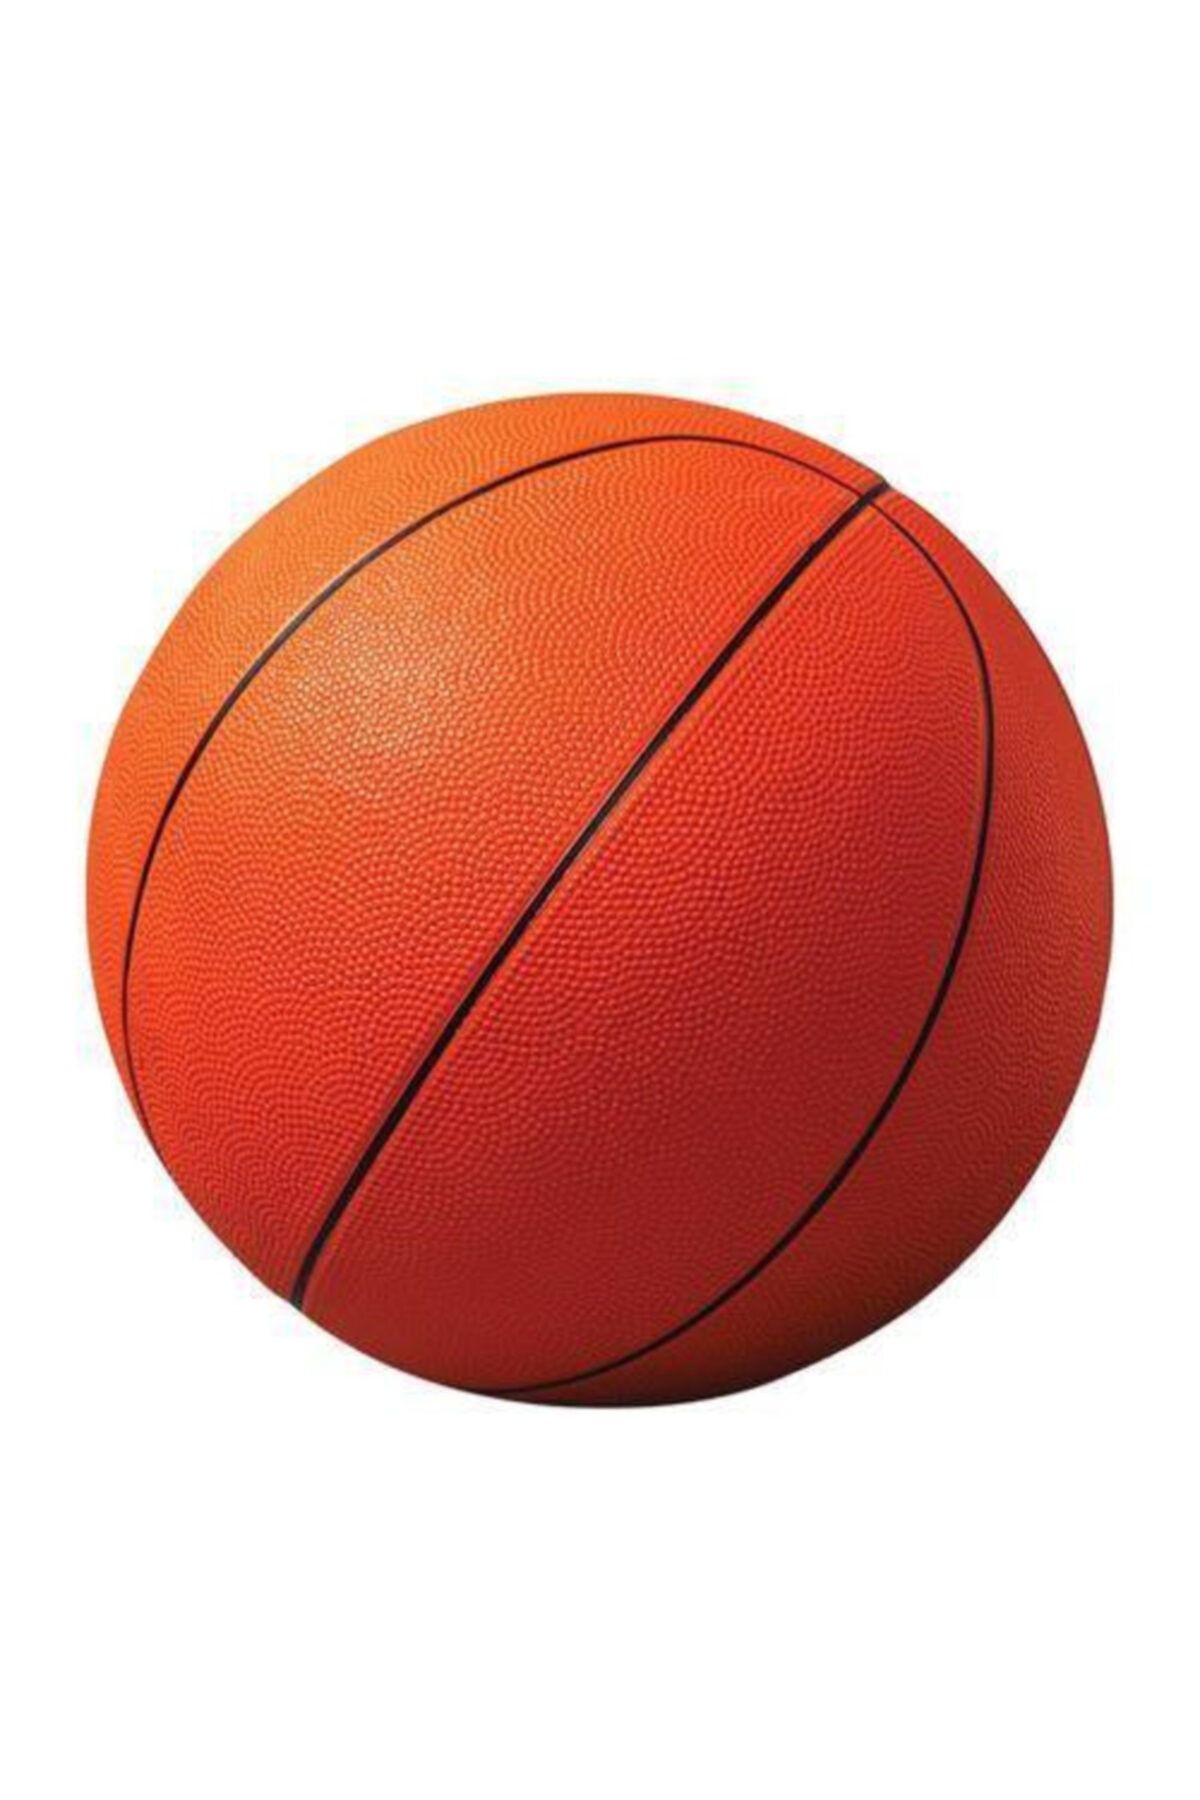 Değerli Profesyonel Boy Kauçuk Basketbol Topu